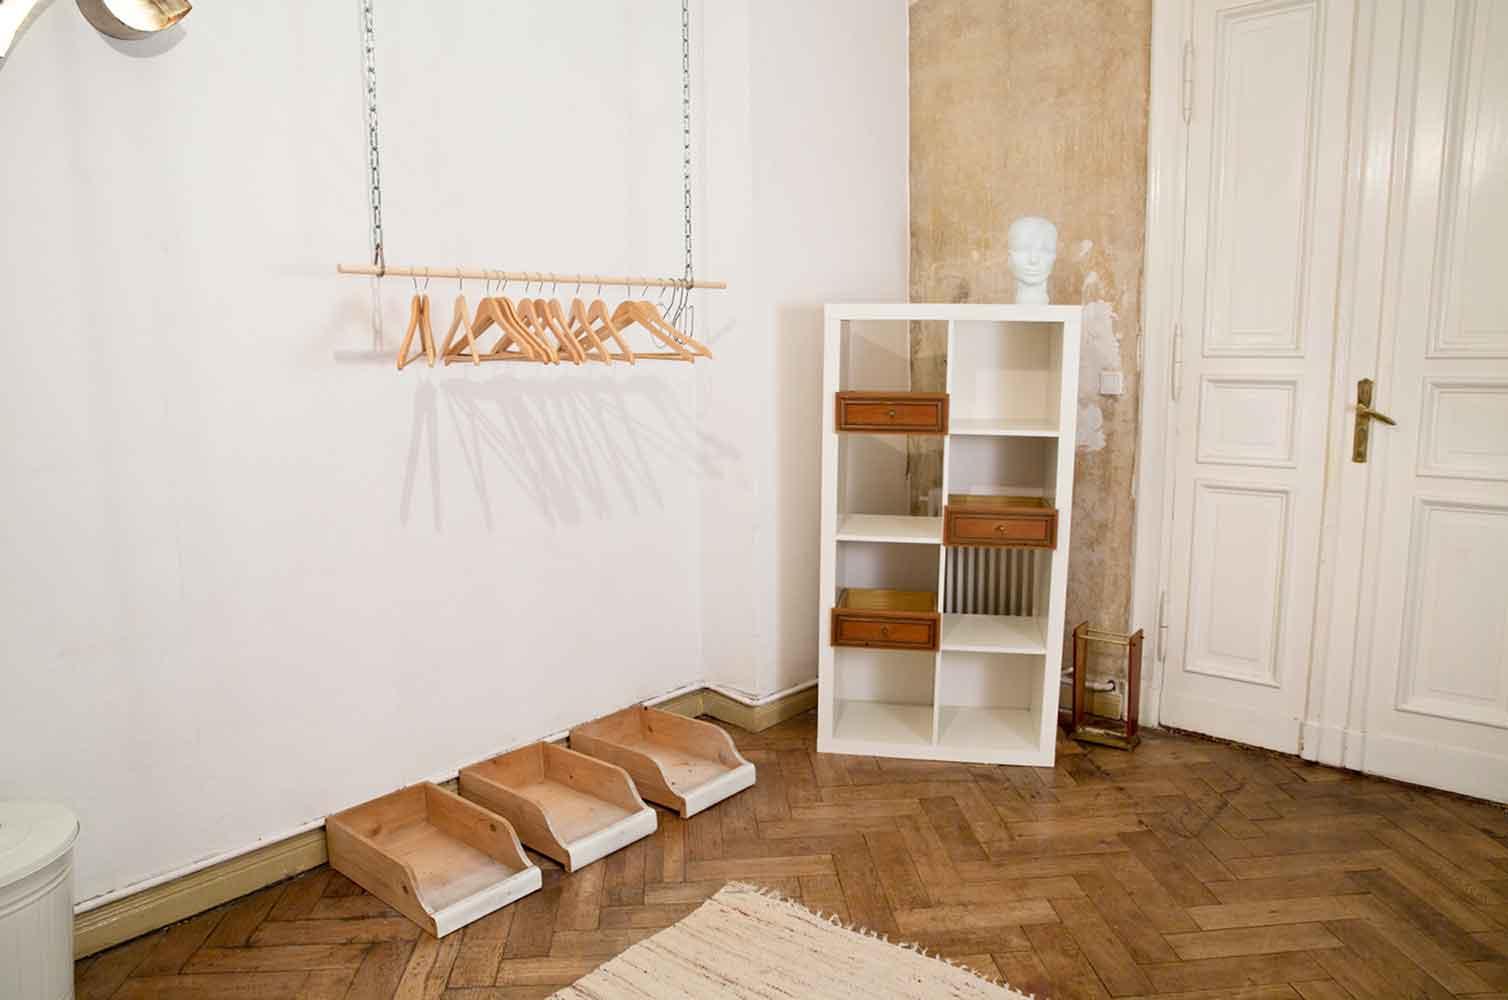 Das Gästewohnzimmer, Detail Regal und Aufhangsystem #minimalismus ©Caterina Rancho